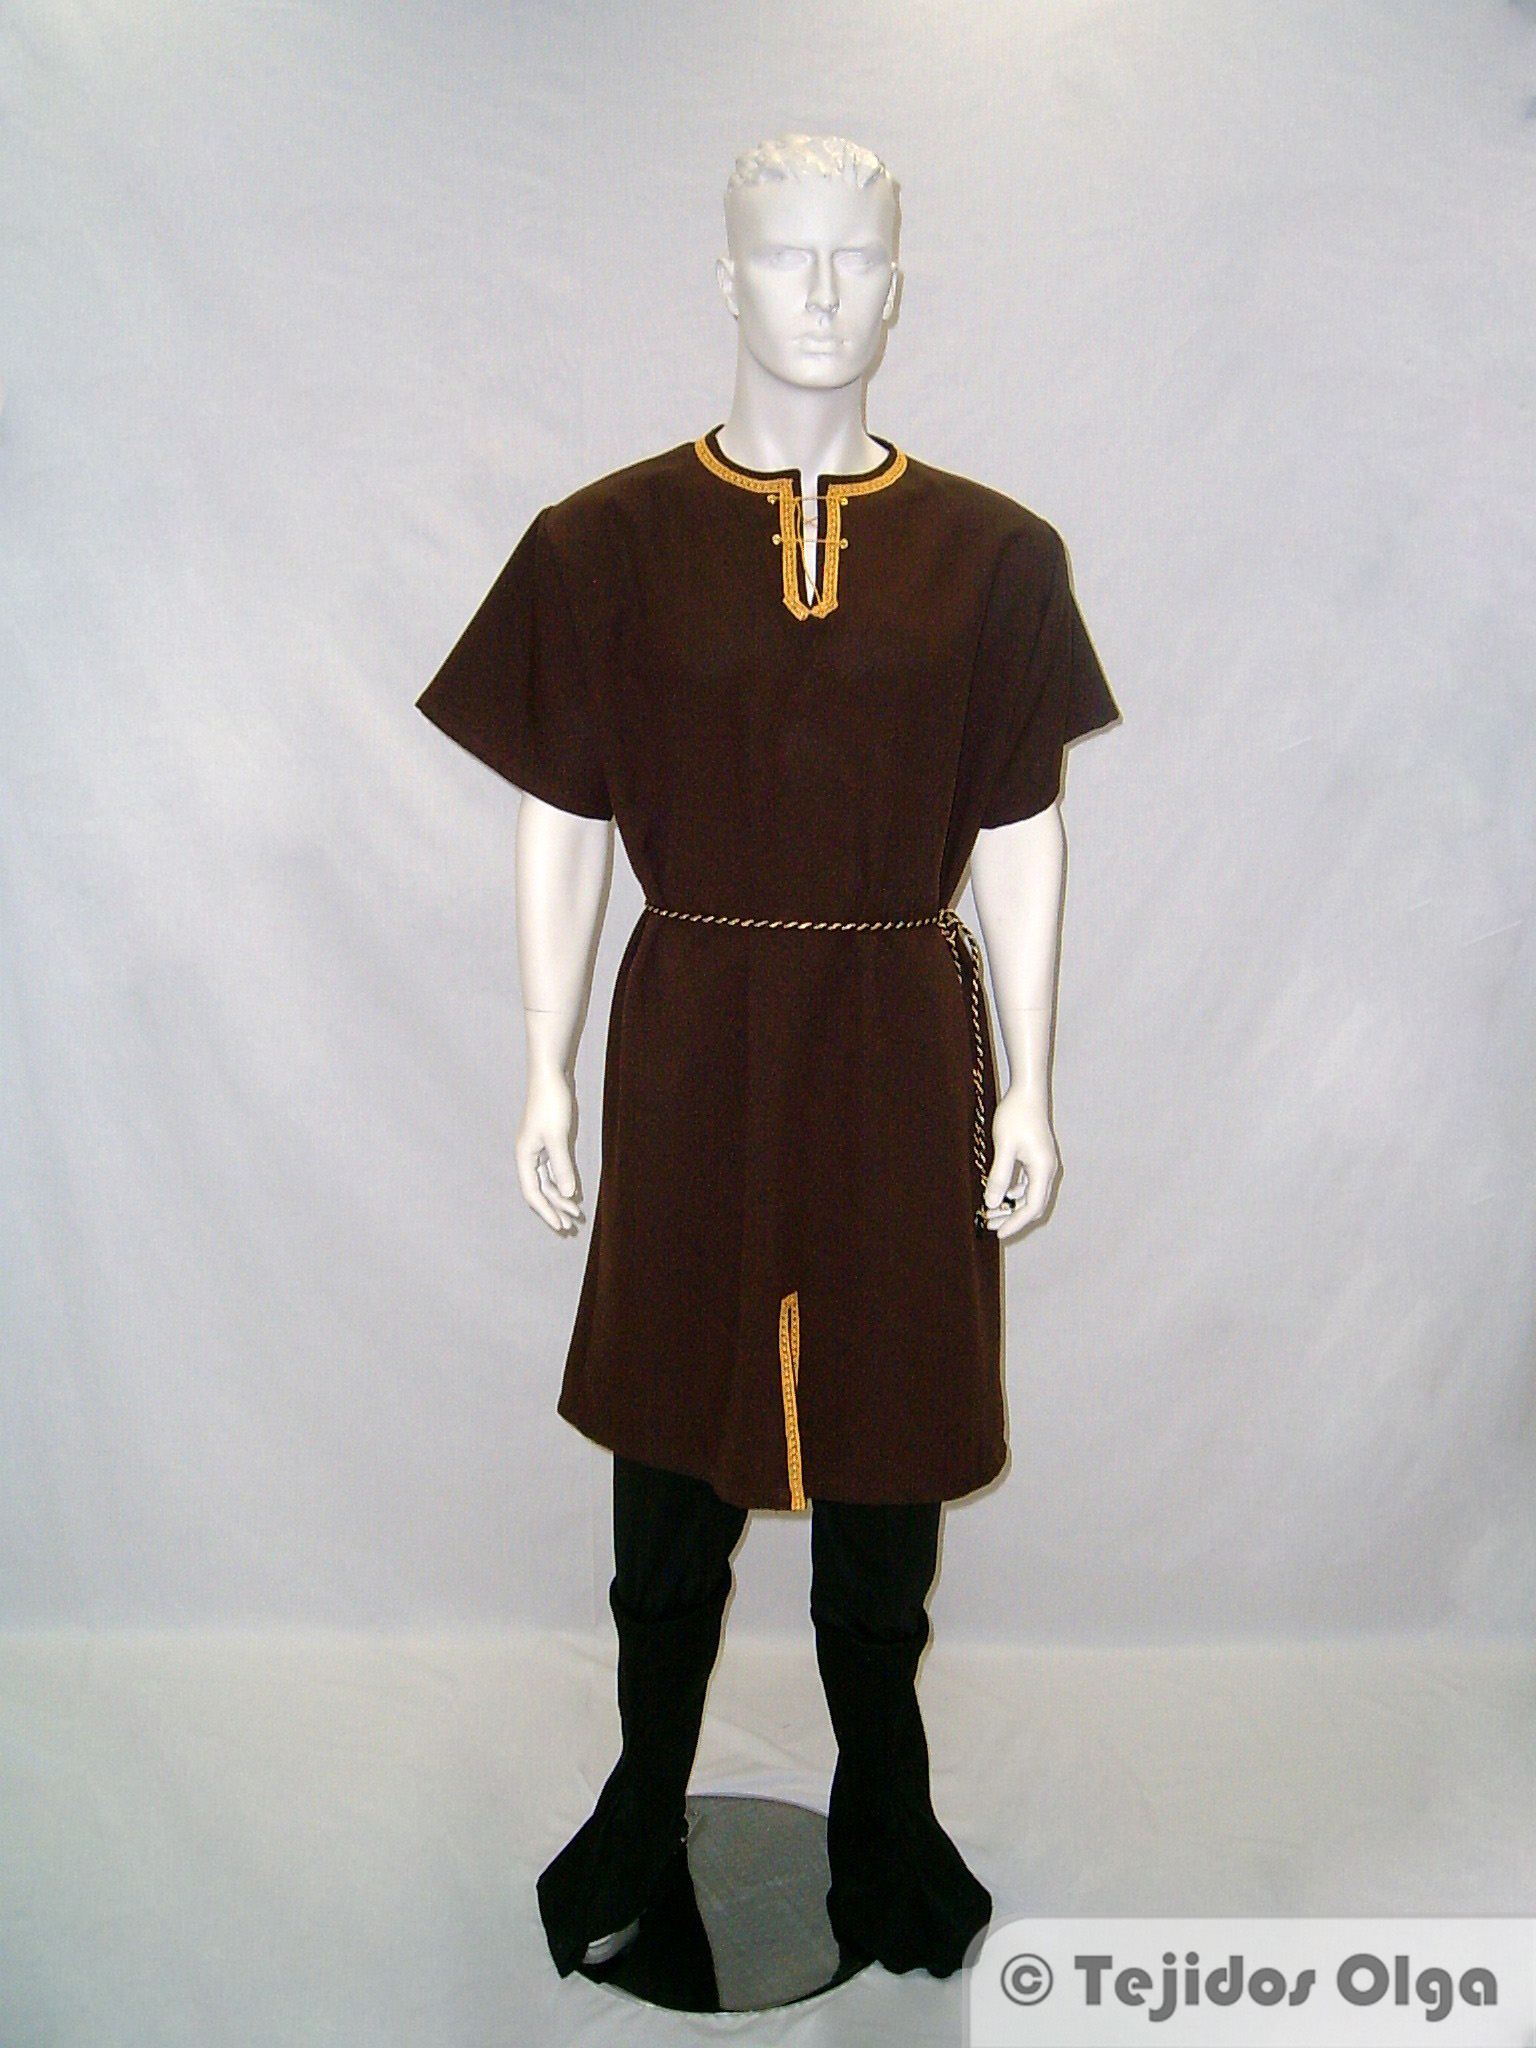 disfraz medieval hombre